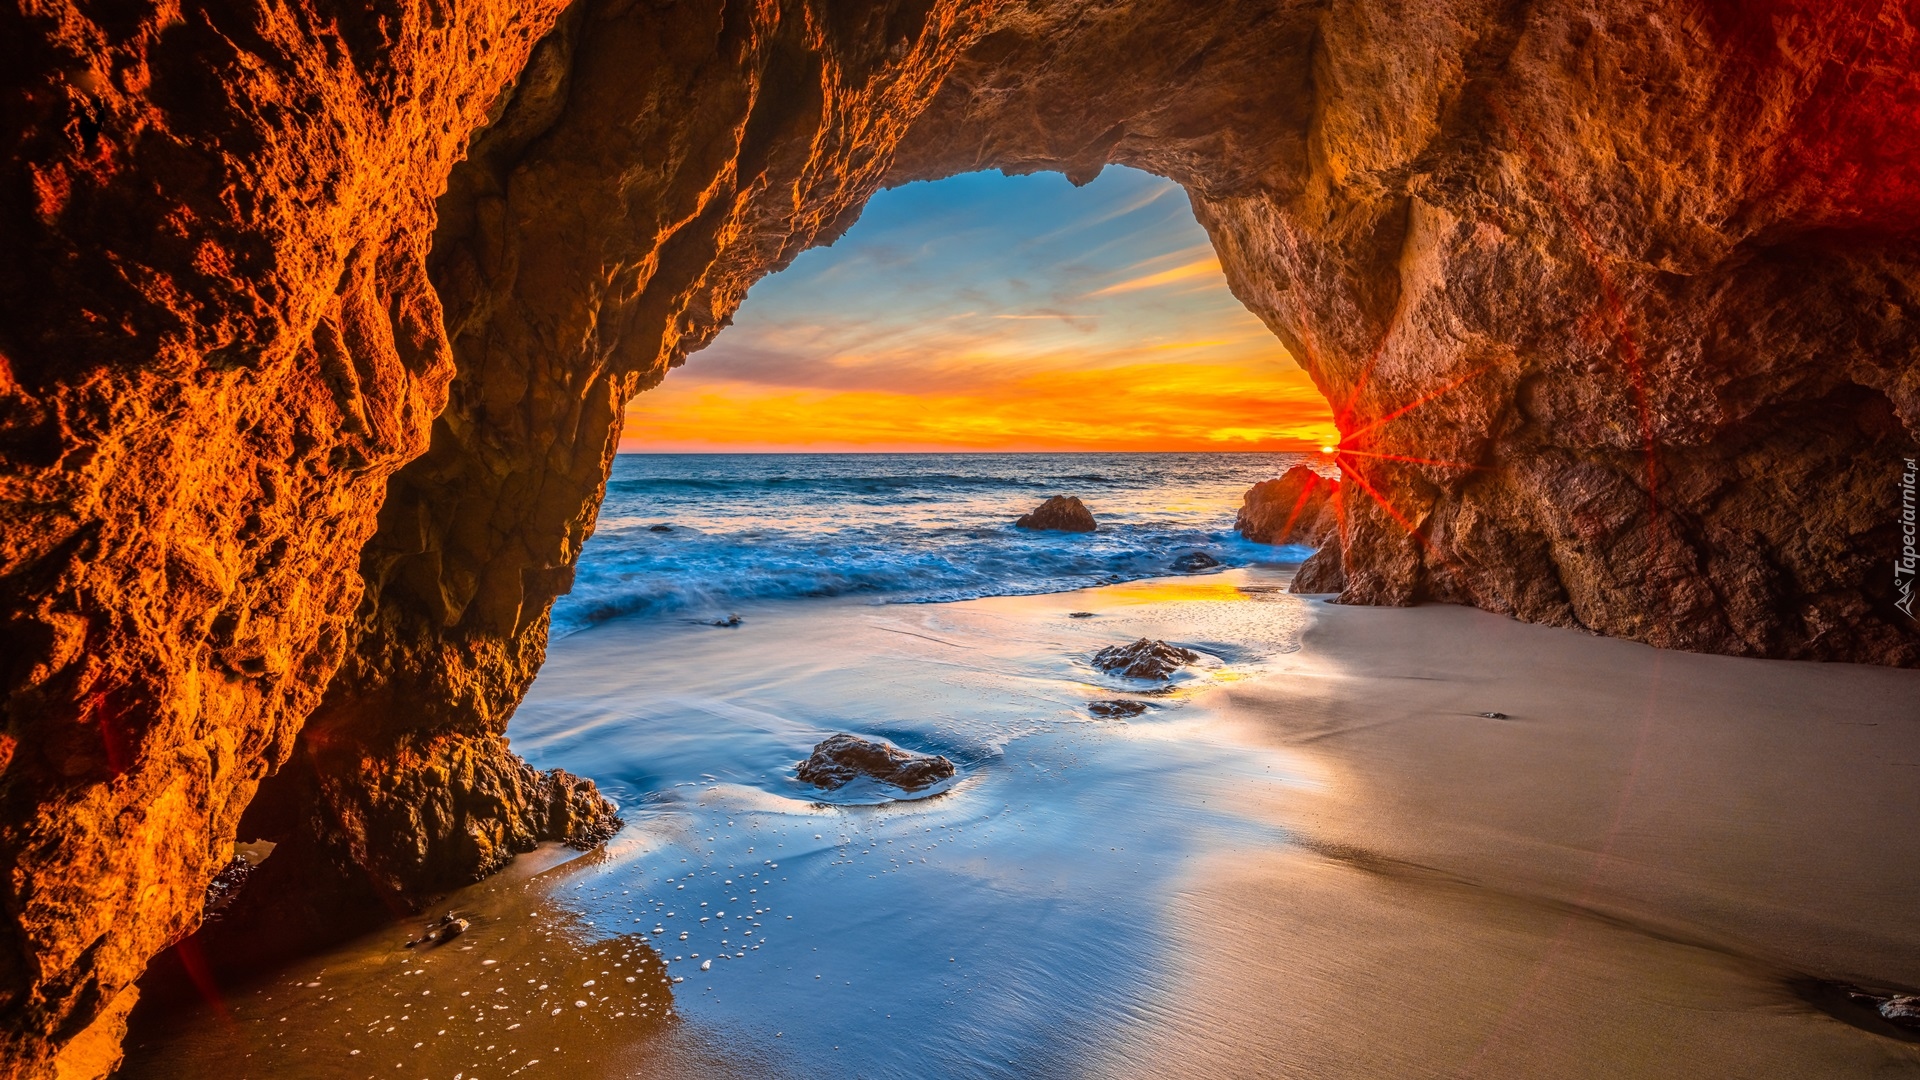 Jaskinia, Skały, Plaża, El Matador Beach, Morze, Zachód słońca, Malibu, Kalifornia, Stany Zjednoczone